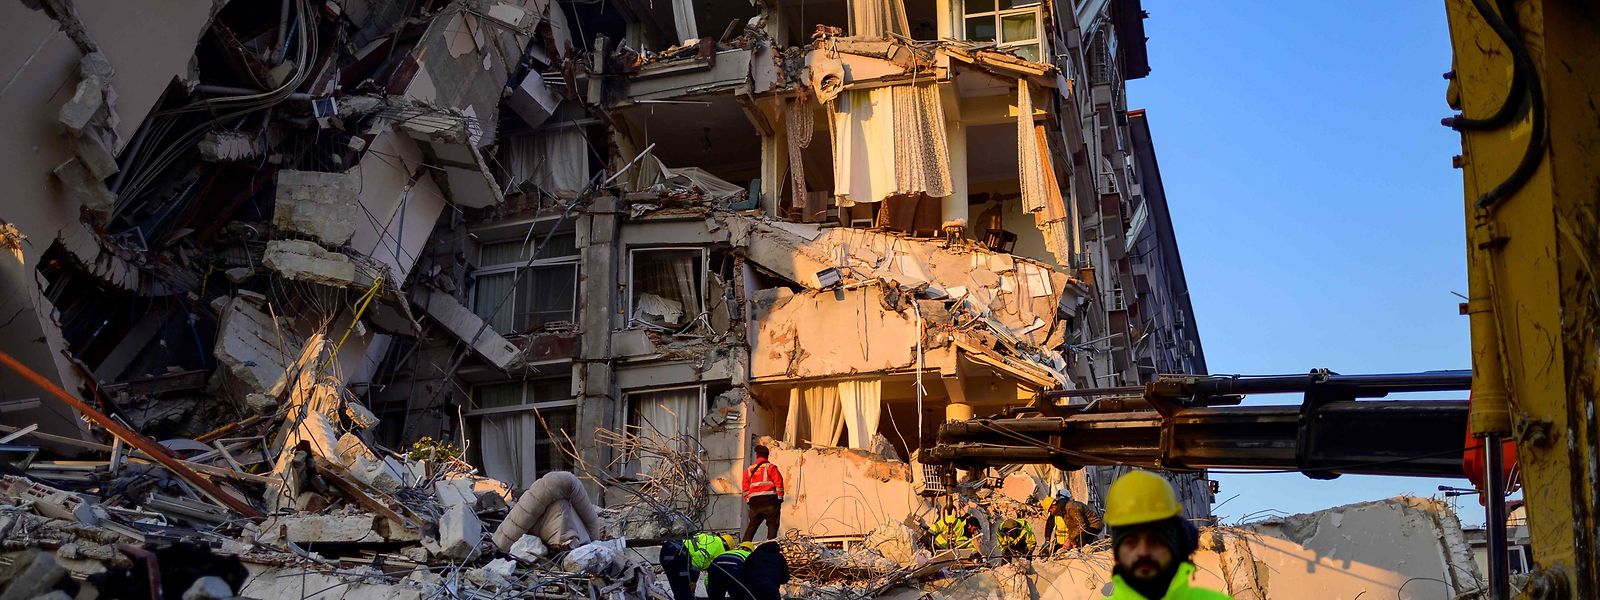 Laut offiziellen Angaben wurden bisher 23.000 Leichen nach dem katastrophalen Erdbeben in der Grenzregion zwischen der Türkei und Syrien geborgen. Schätzungen zufolge könnte die Zahl der Todesopfer aber auf 50.000 steigen.